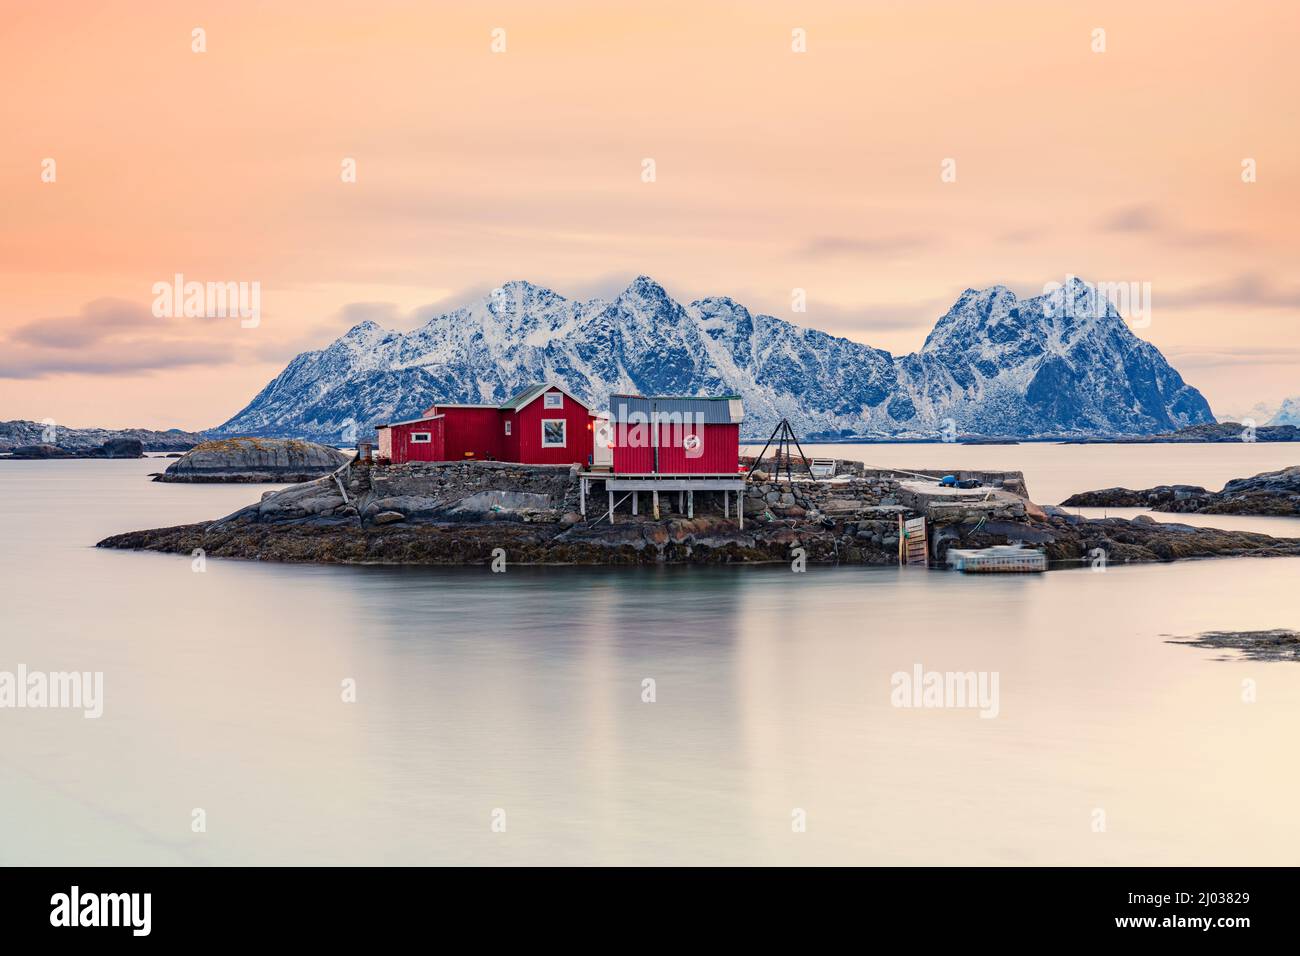 Cabine isolate di pescatori rossi sulle rocce del mare freddo al tramonto, Svolvaer, contea del Nordland, Isole Lofoten, Norvegia, Scandinavia, Europa Foto Stock